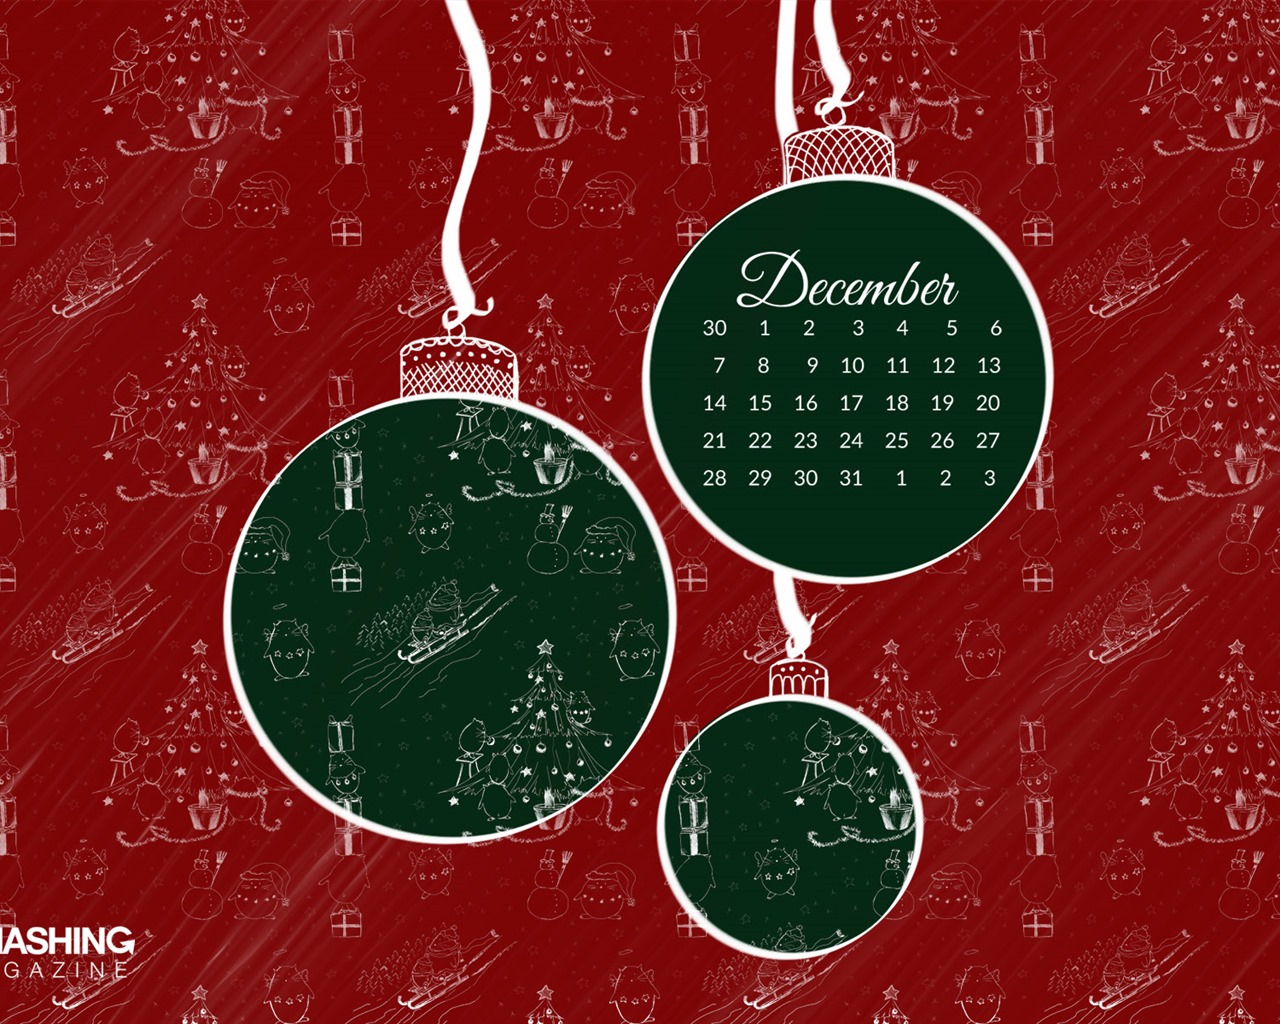 December 2015 Calendar wallpaper (2) #10 - 1280x1024